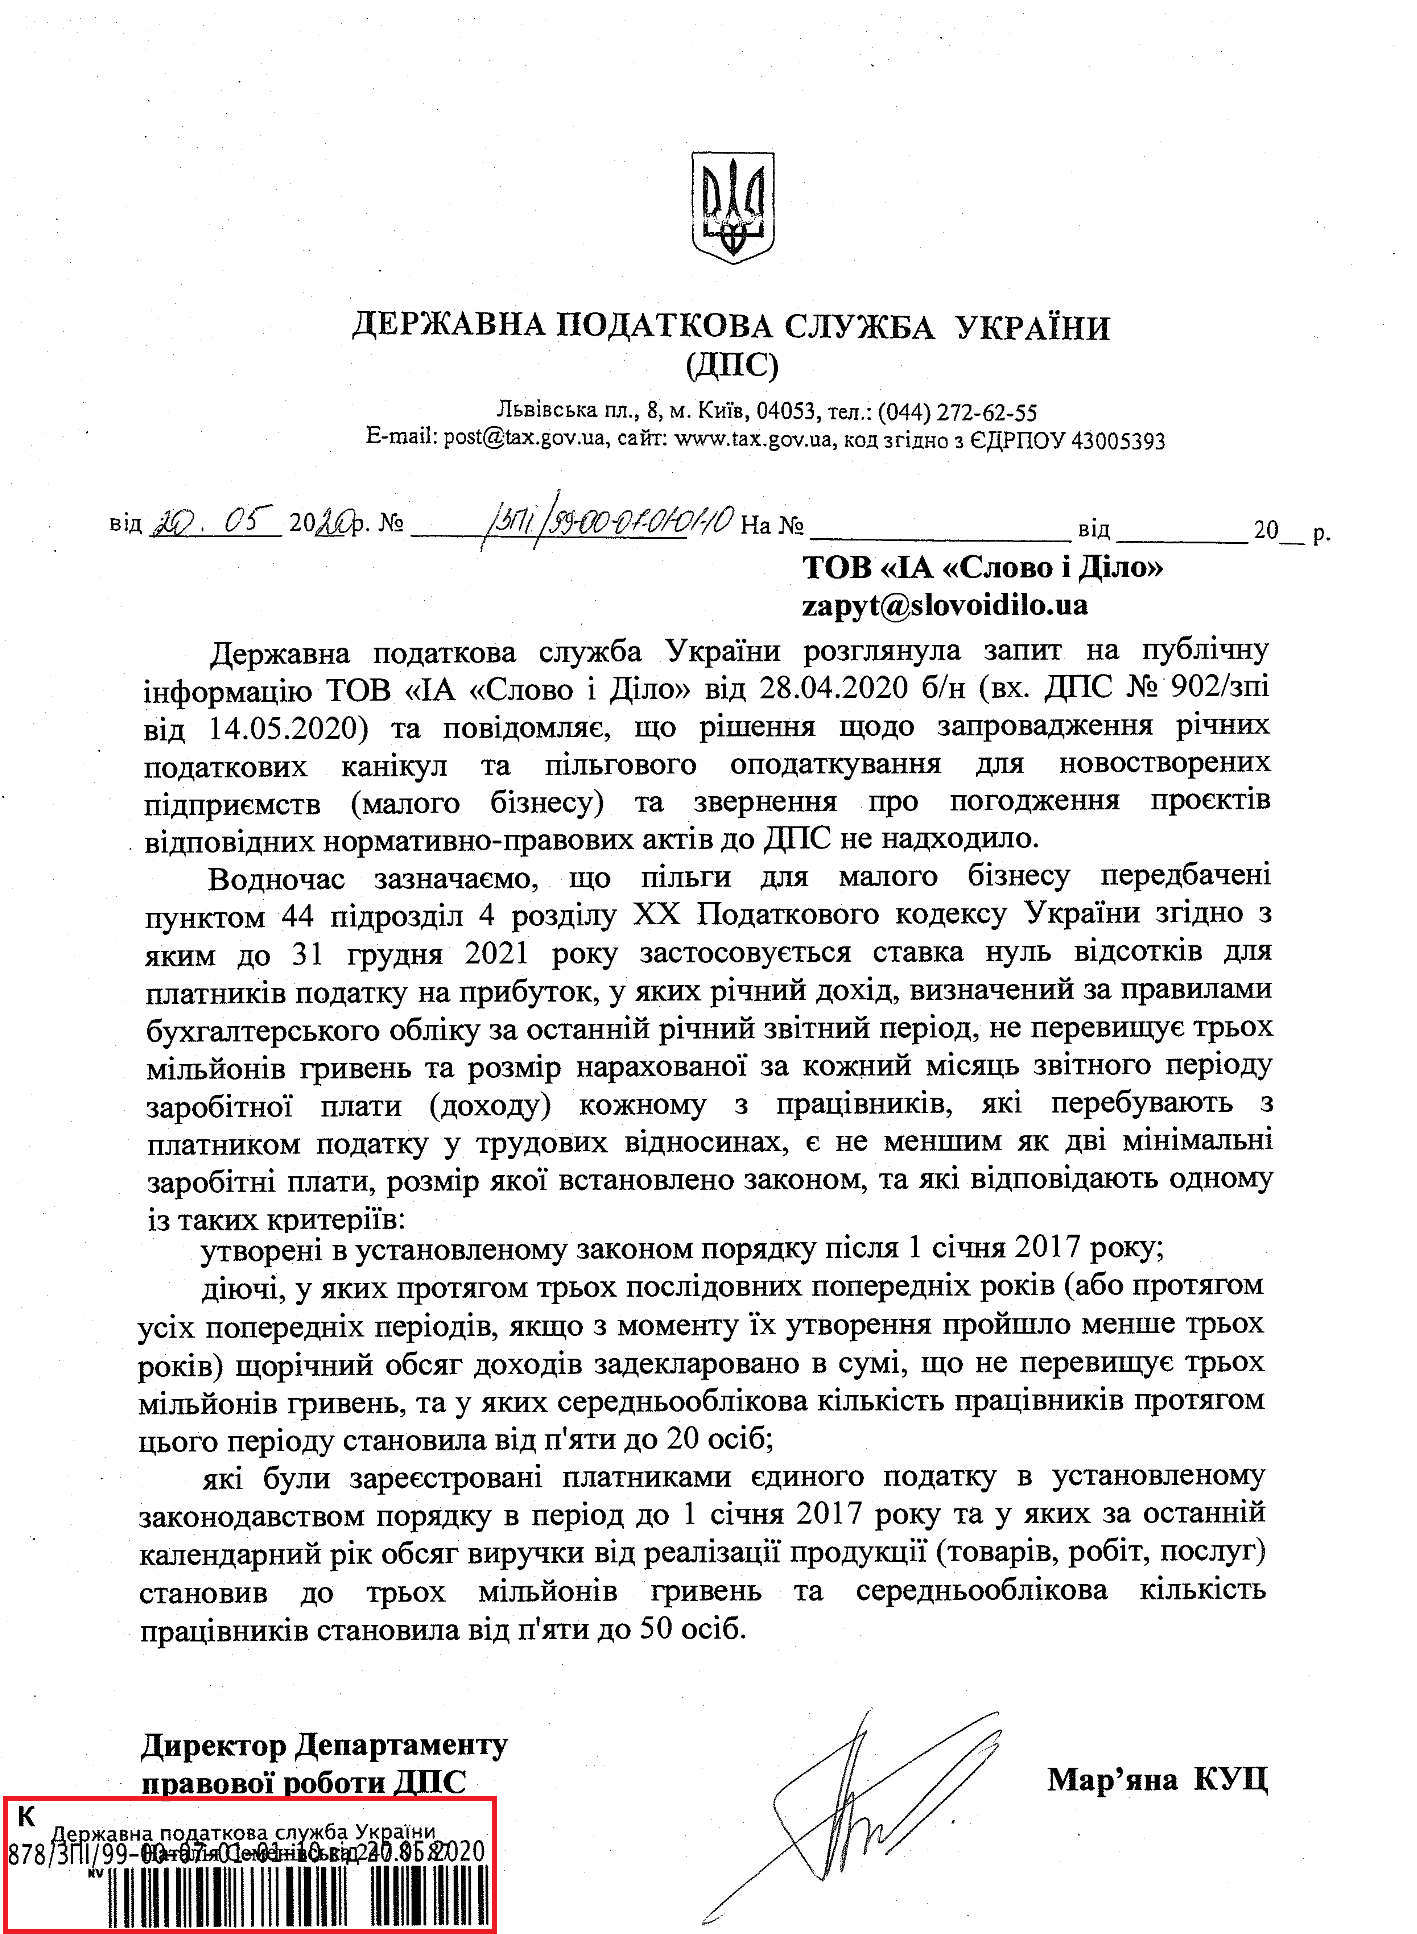 Лист Державної податкової служби України від 20 травня 2020 року